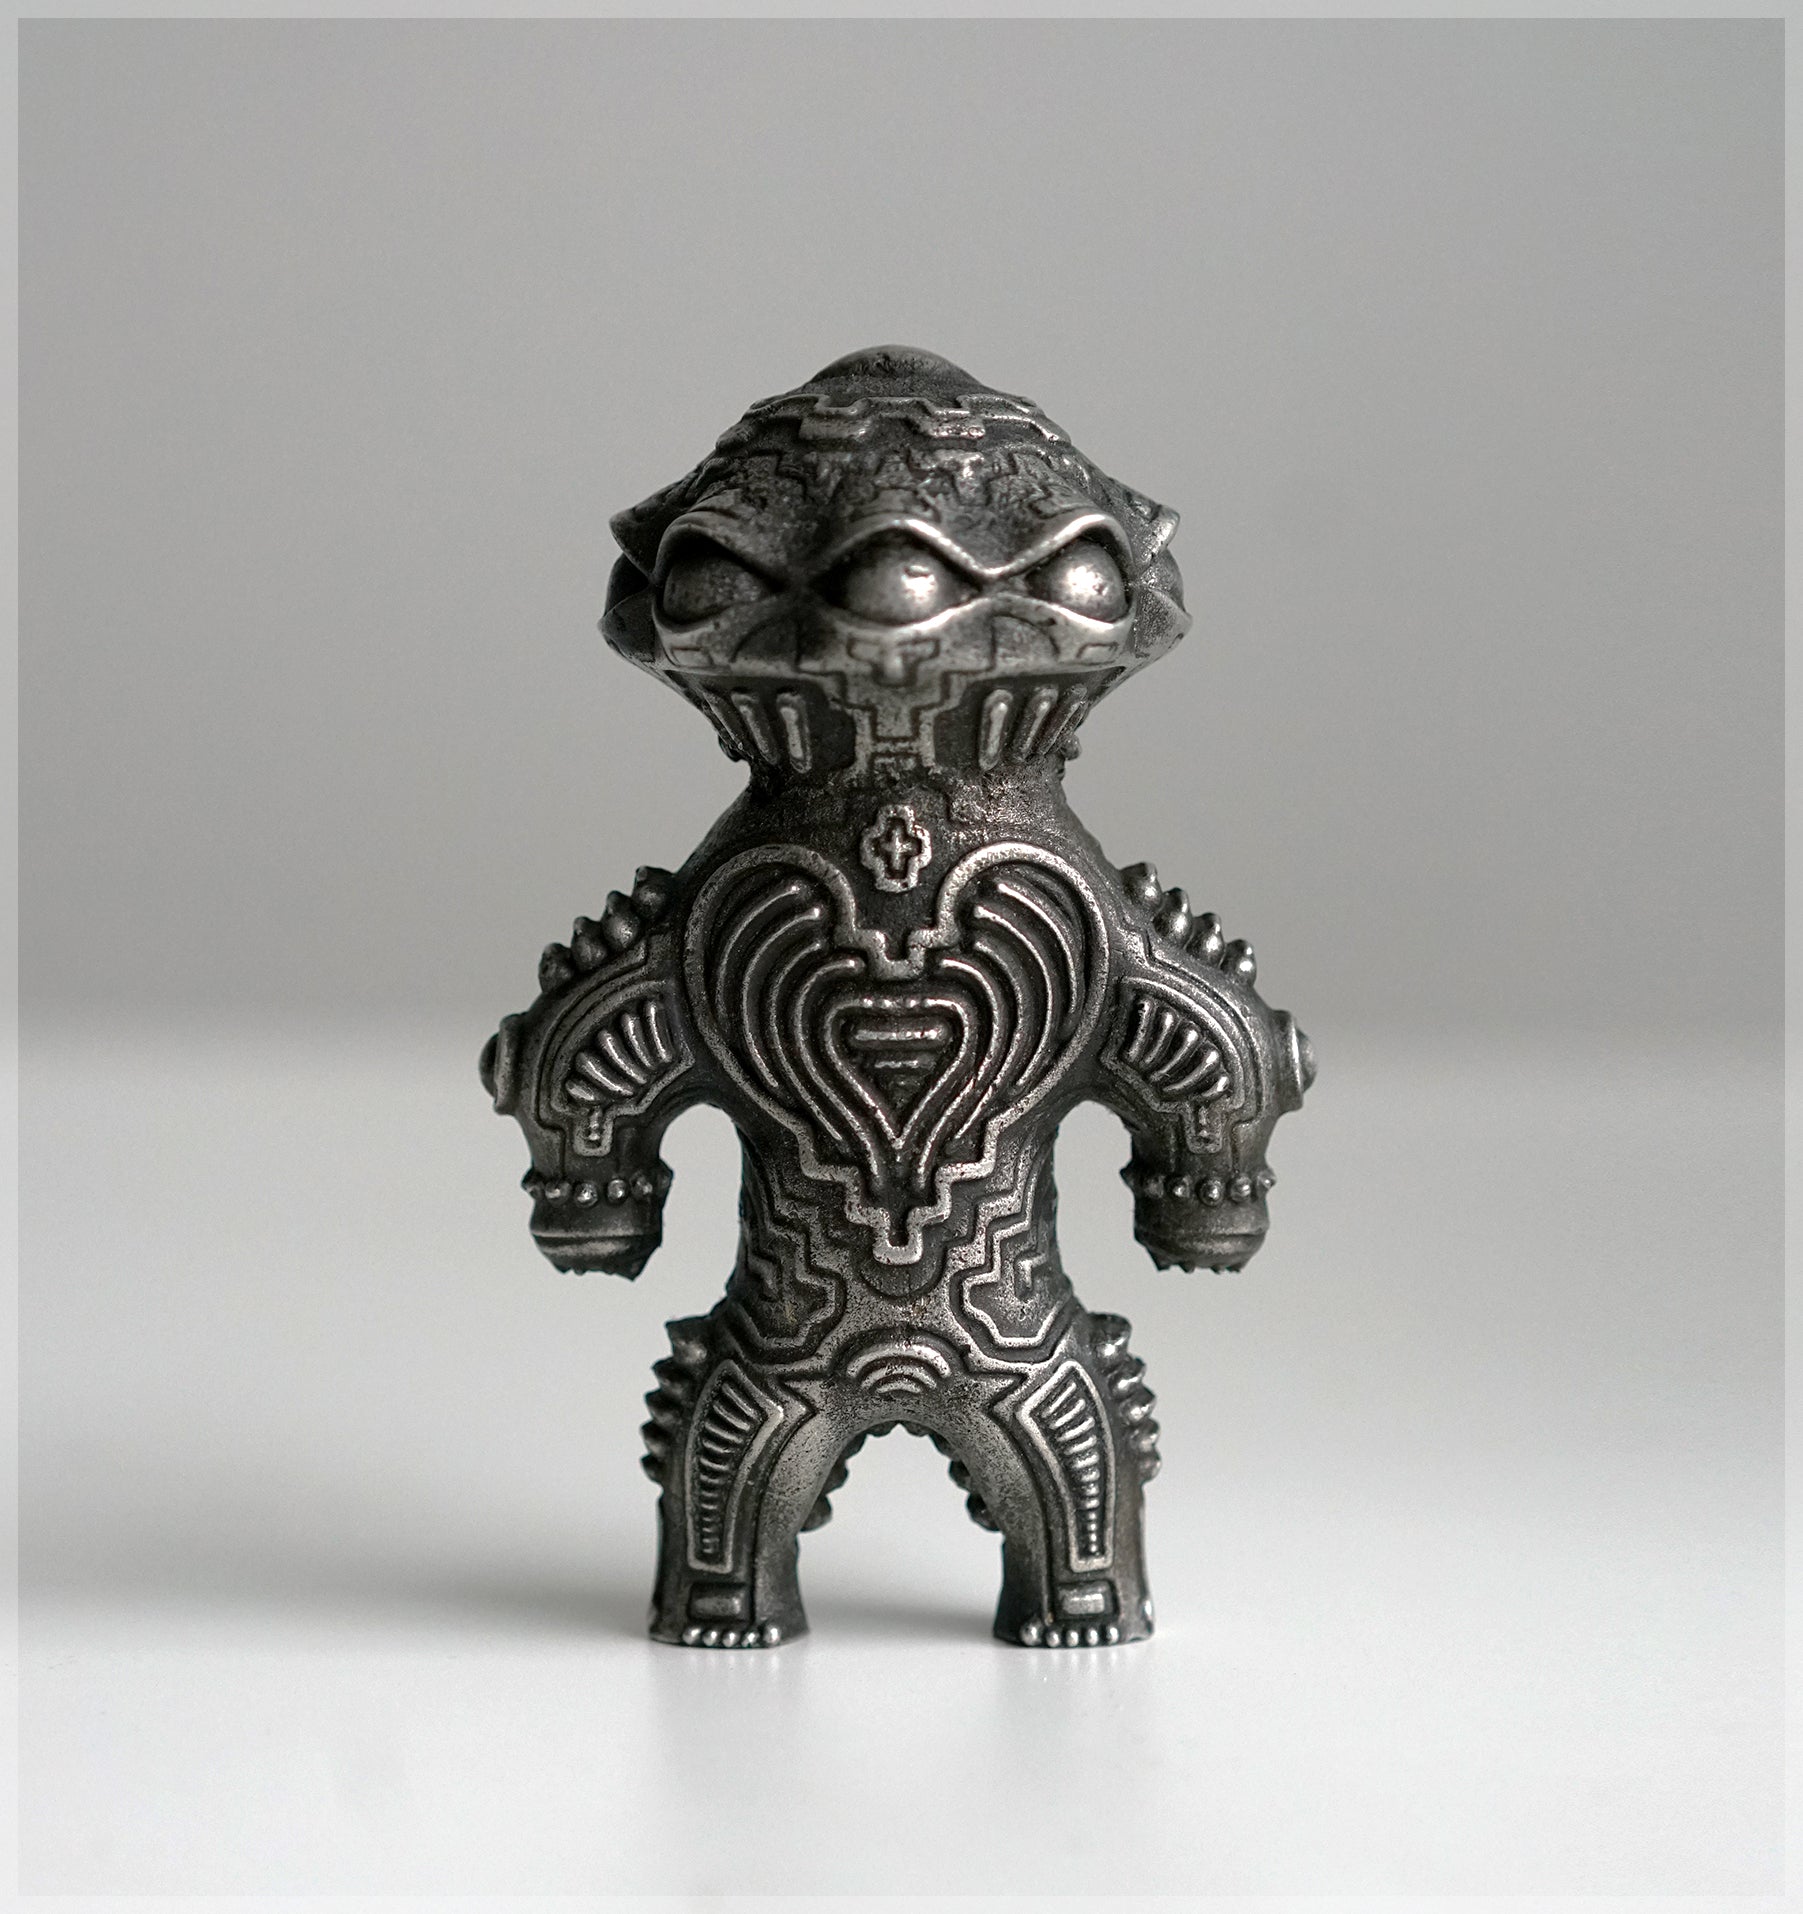 Alien Dogu Sculpture - Pewter Cast by Ben Ridgway